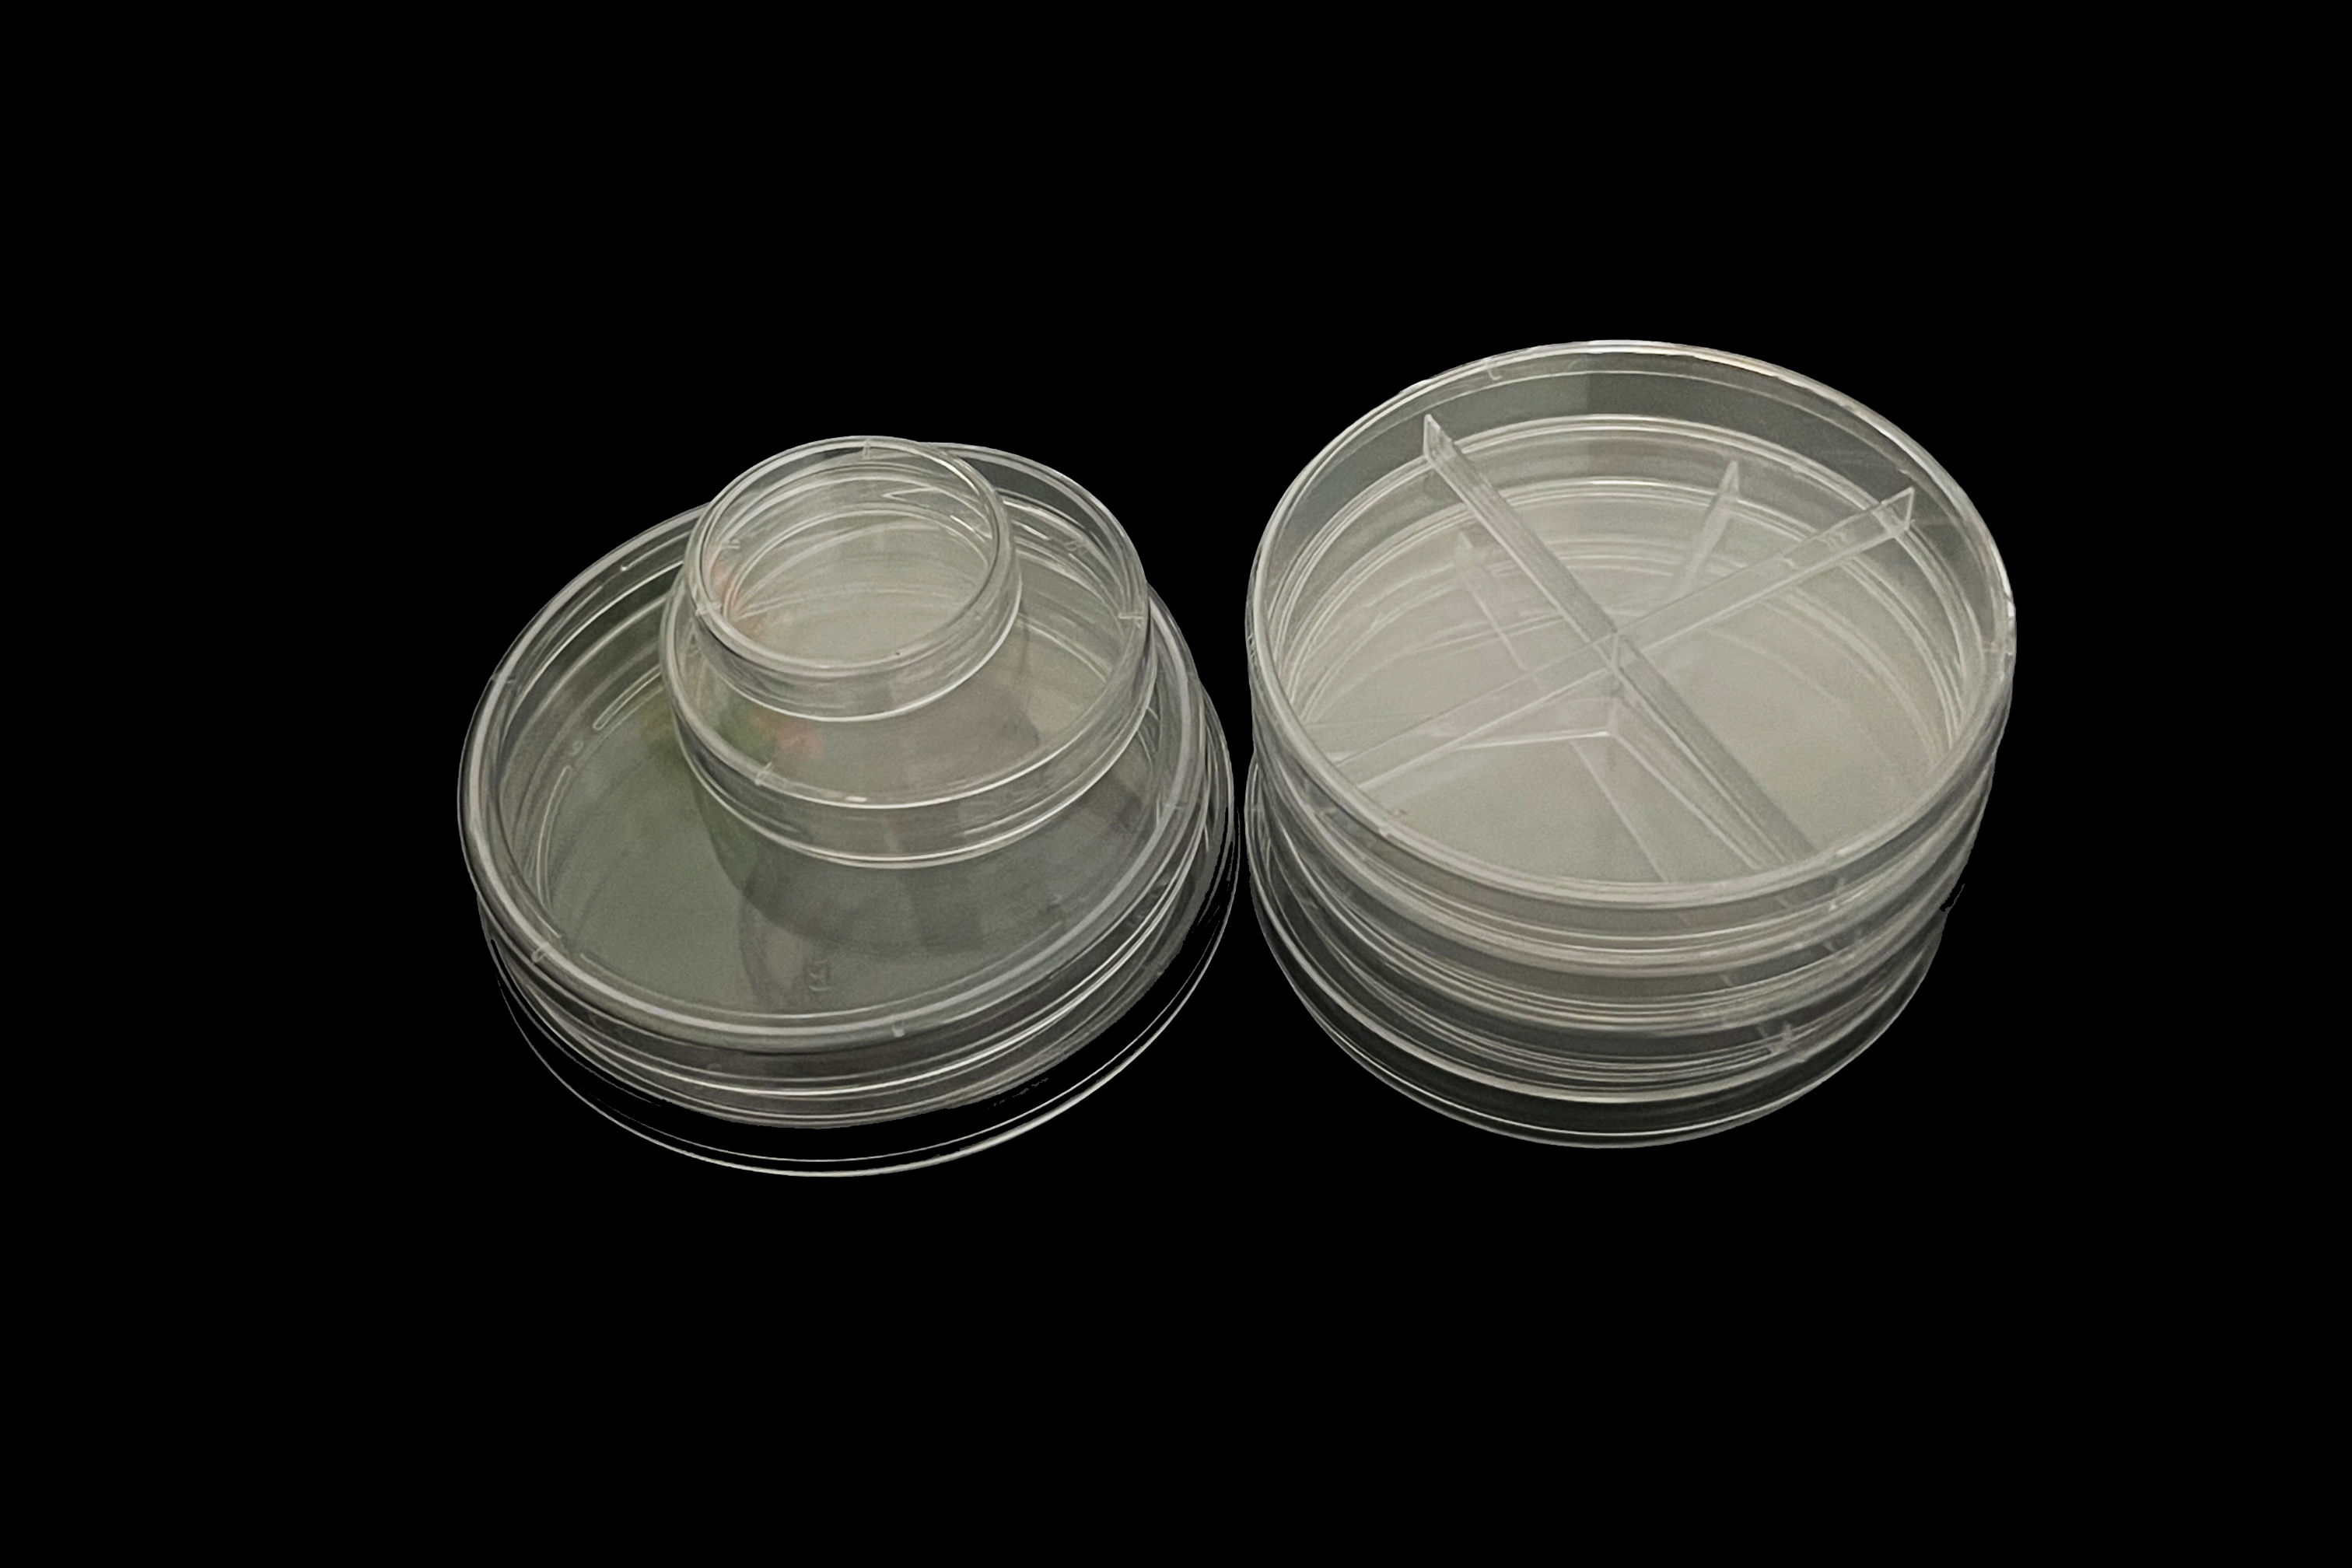 ထုတ်ကုန်အကြံပြုချက်များ |ဆဲလ်ယဉ်ကျေးမှု ကိရိယာများ - ဆဲလ်ယဉ်ကျေးမှု ပန်းကန်